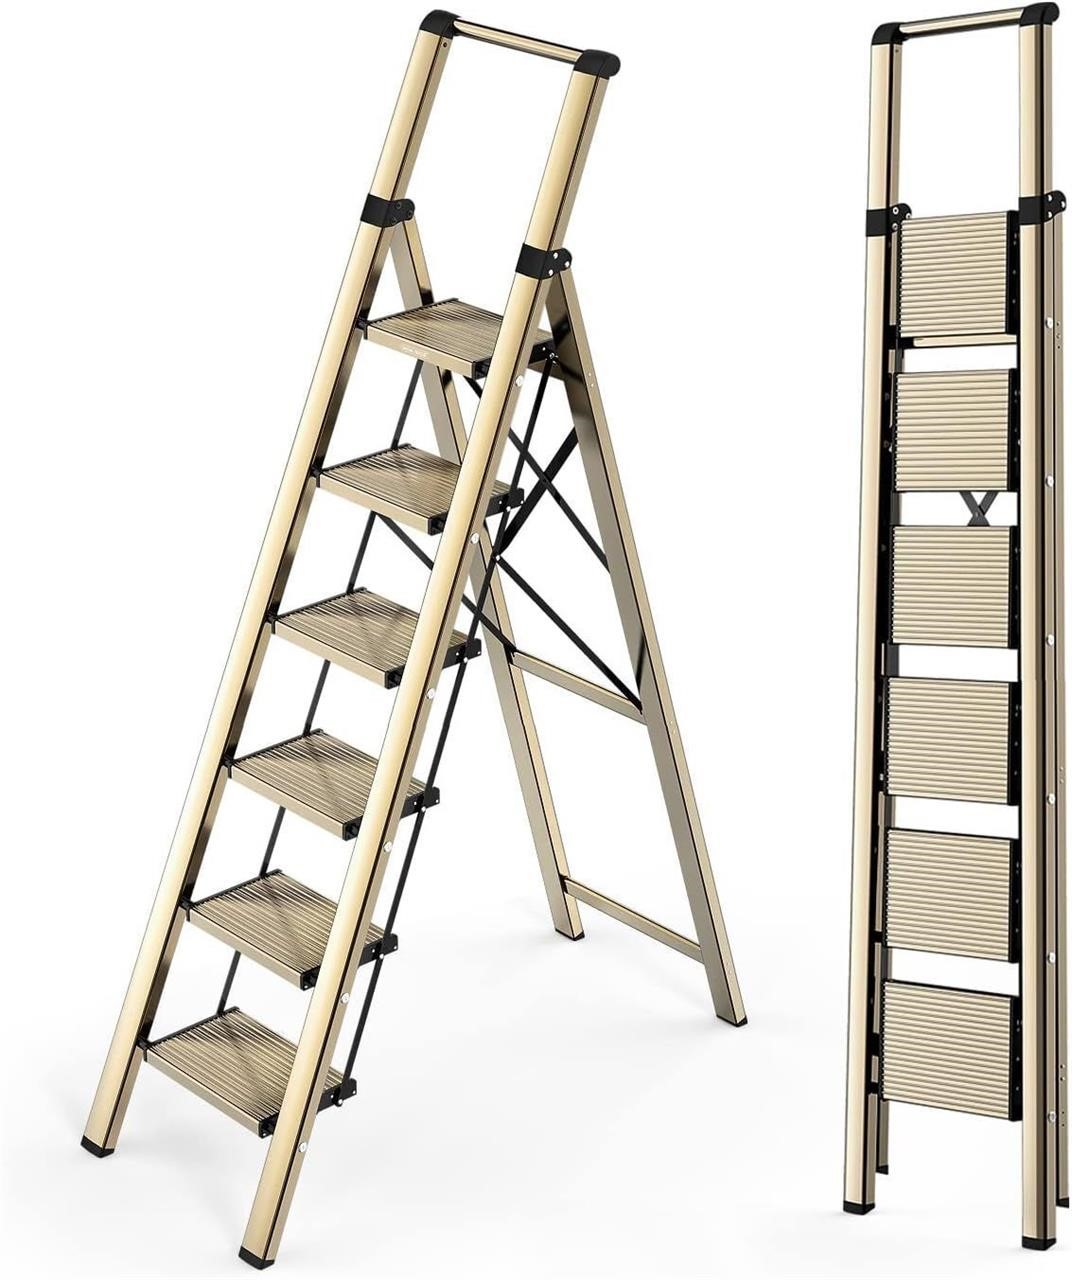 6 STEP Lightweight Folding Ladder